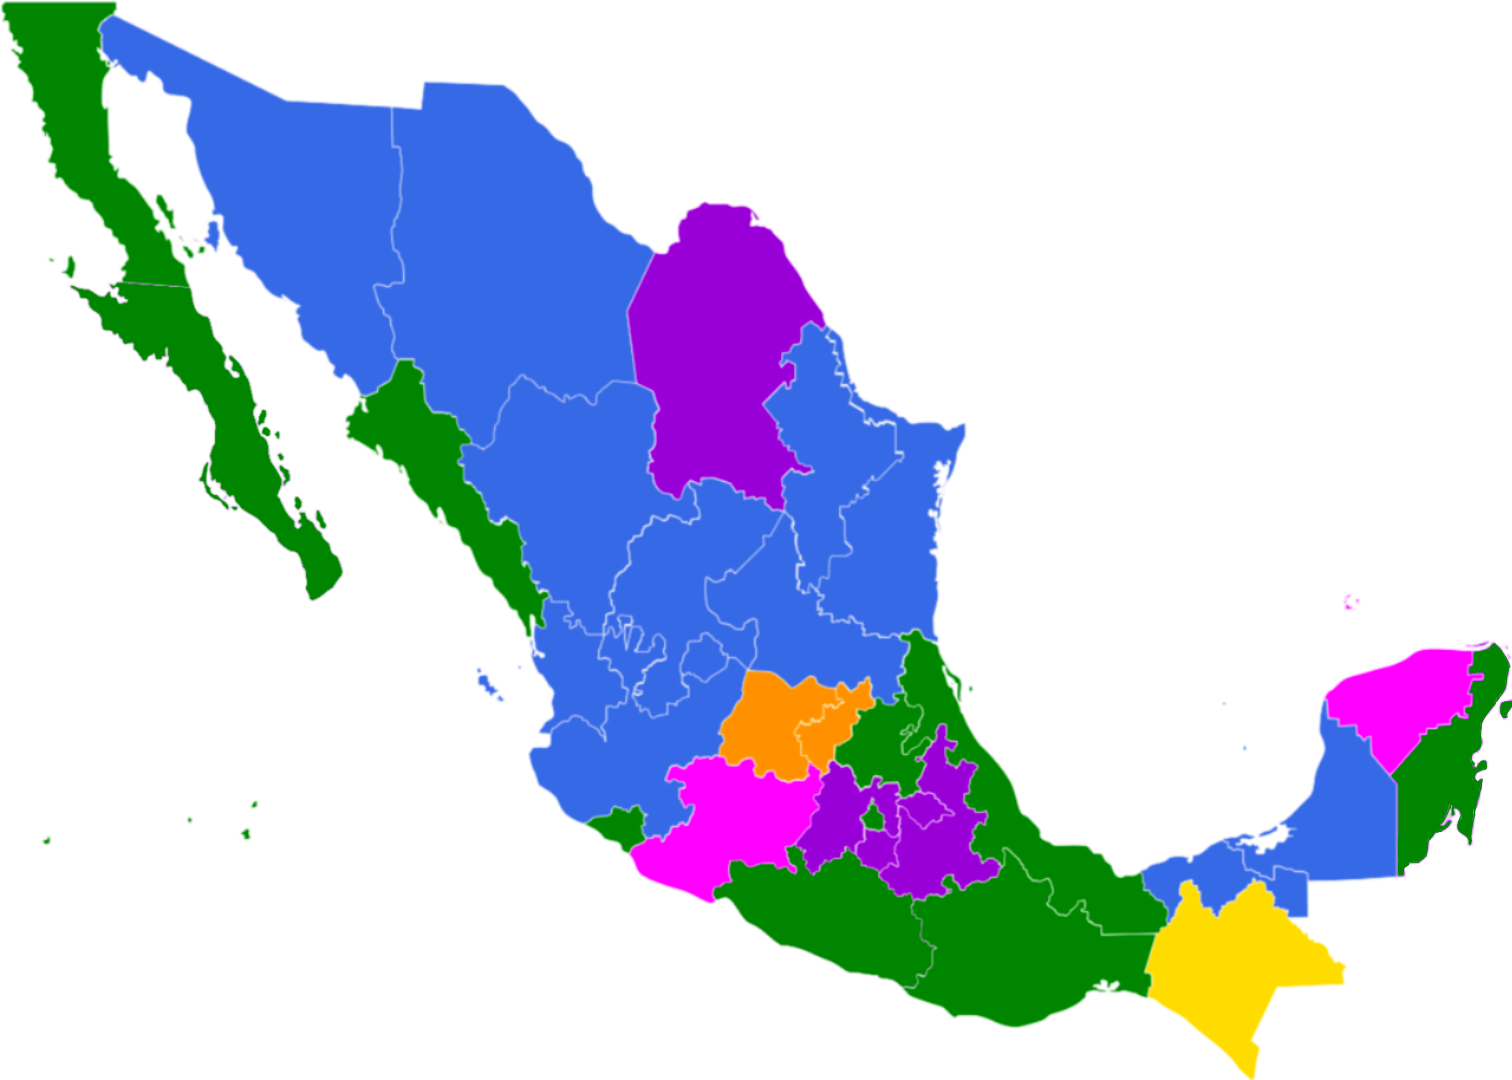 Aborto en México - Wikipedia, la enciclopedia libre